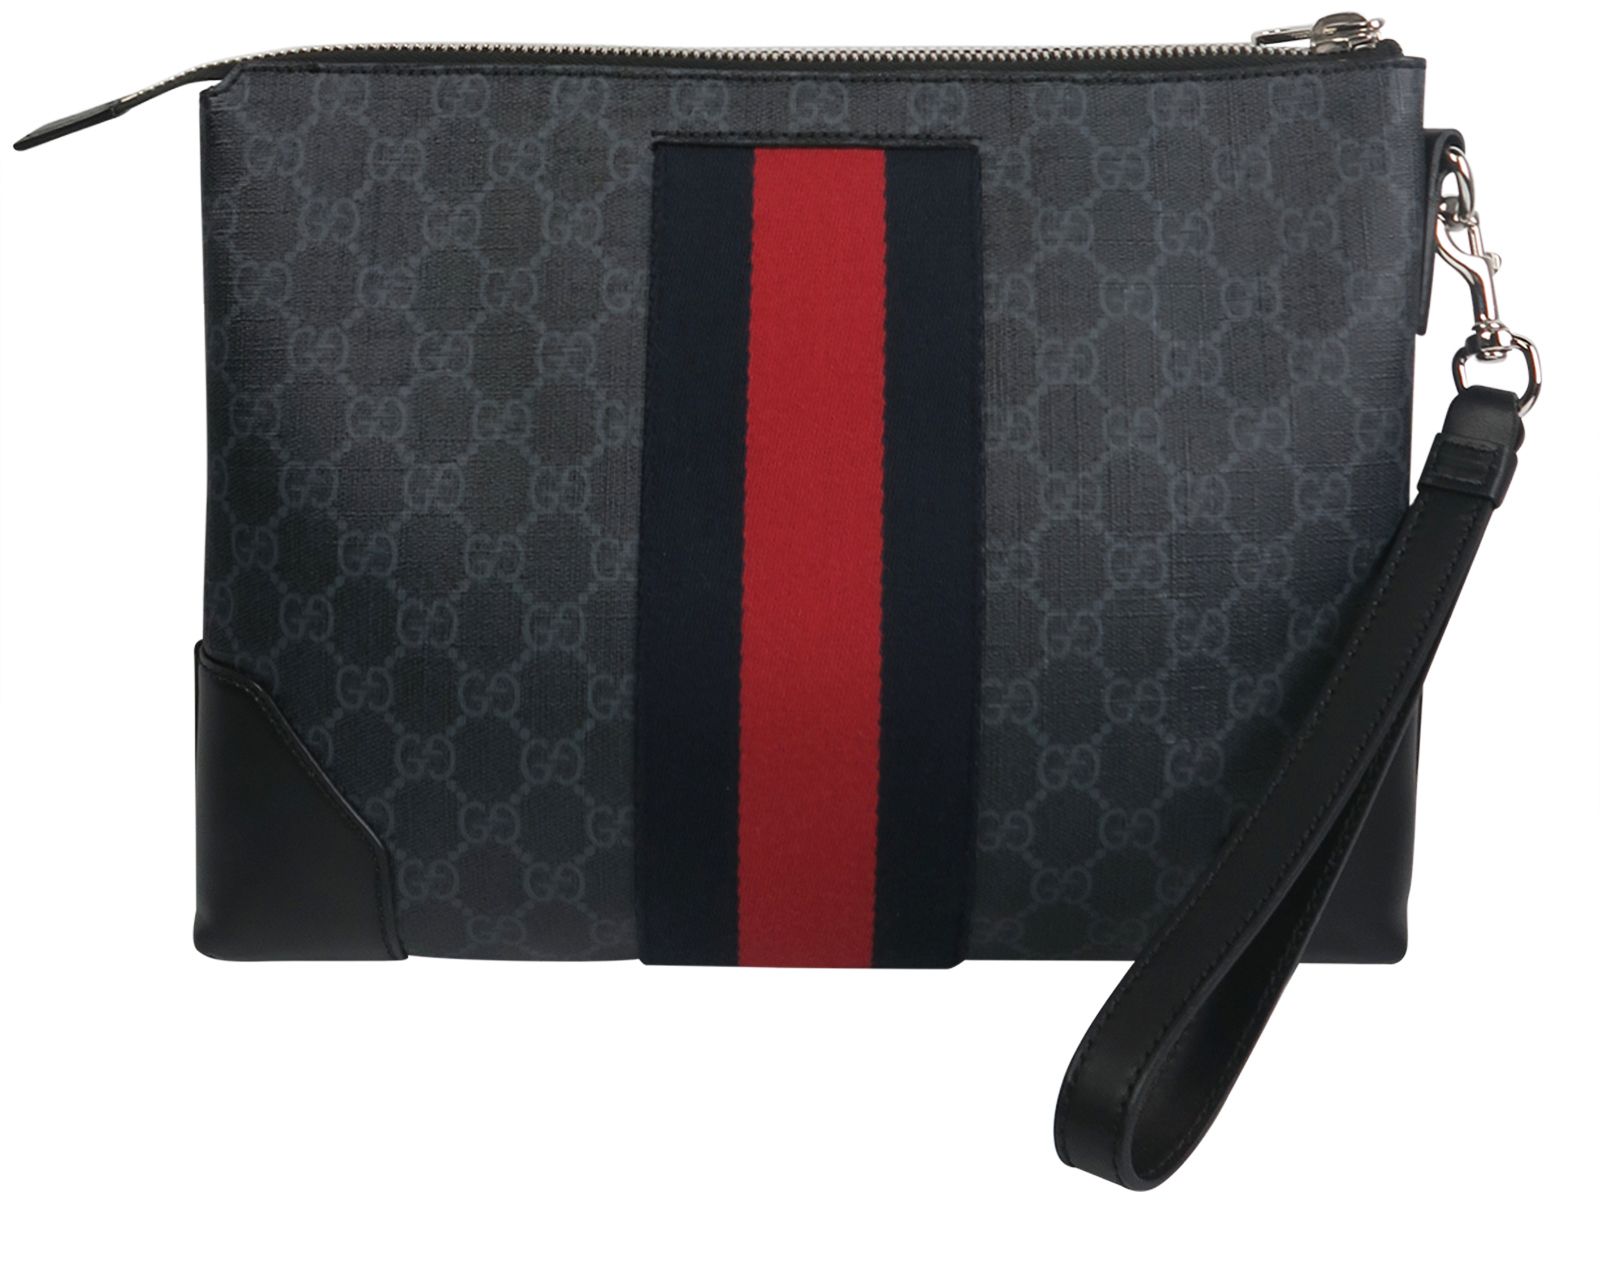 Gucci Black GG Branded Leather Messenger Bag for Men